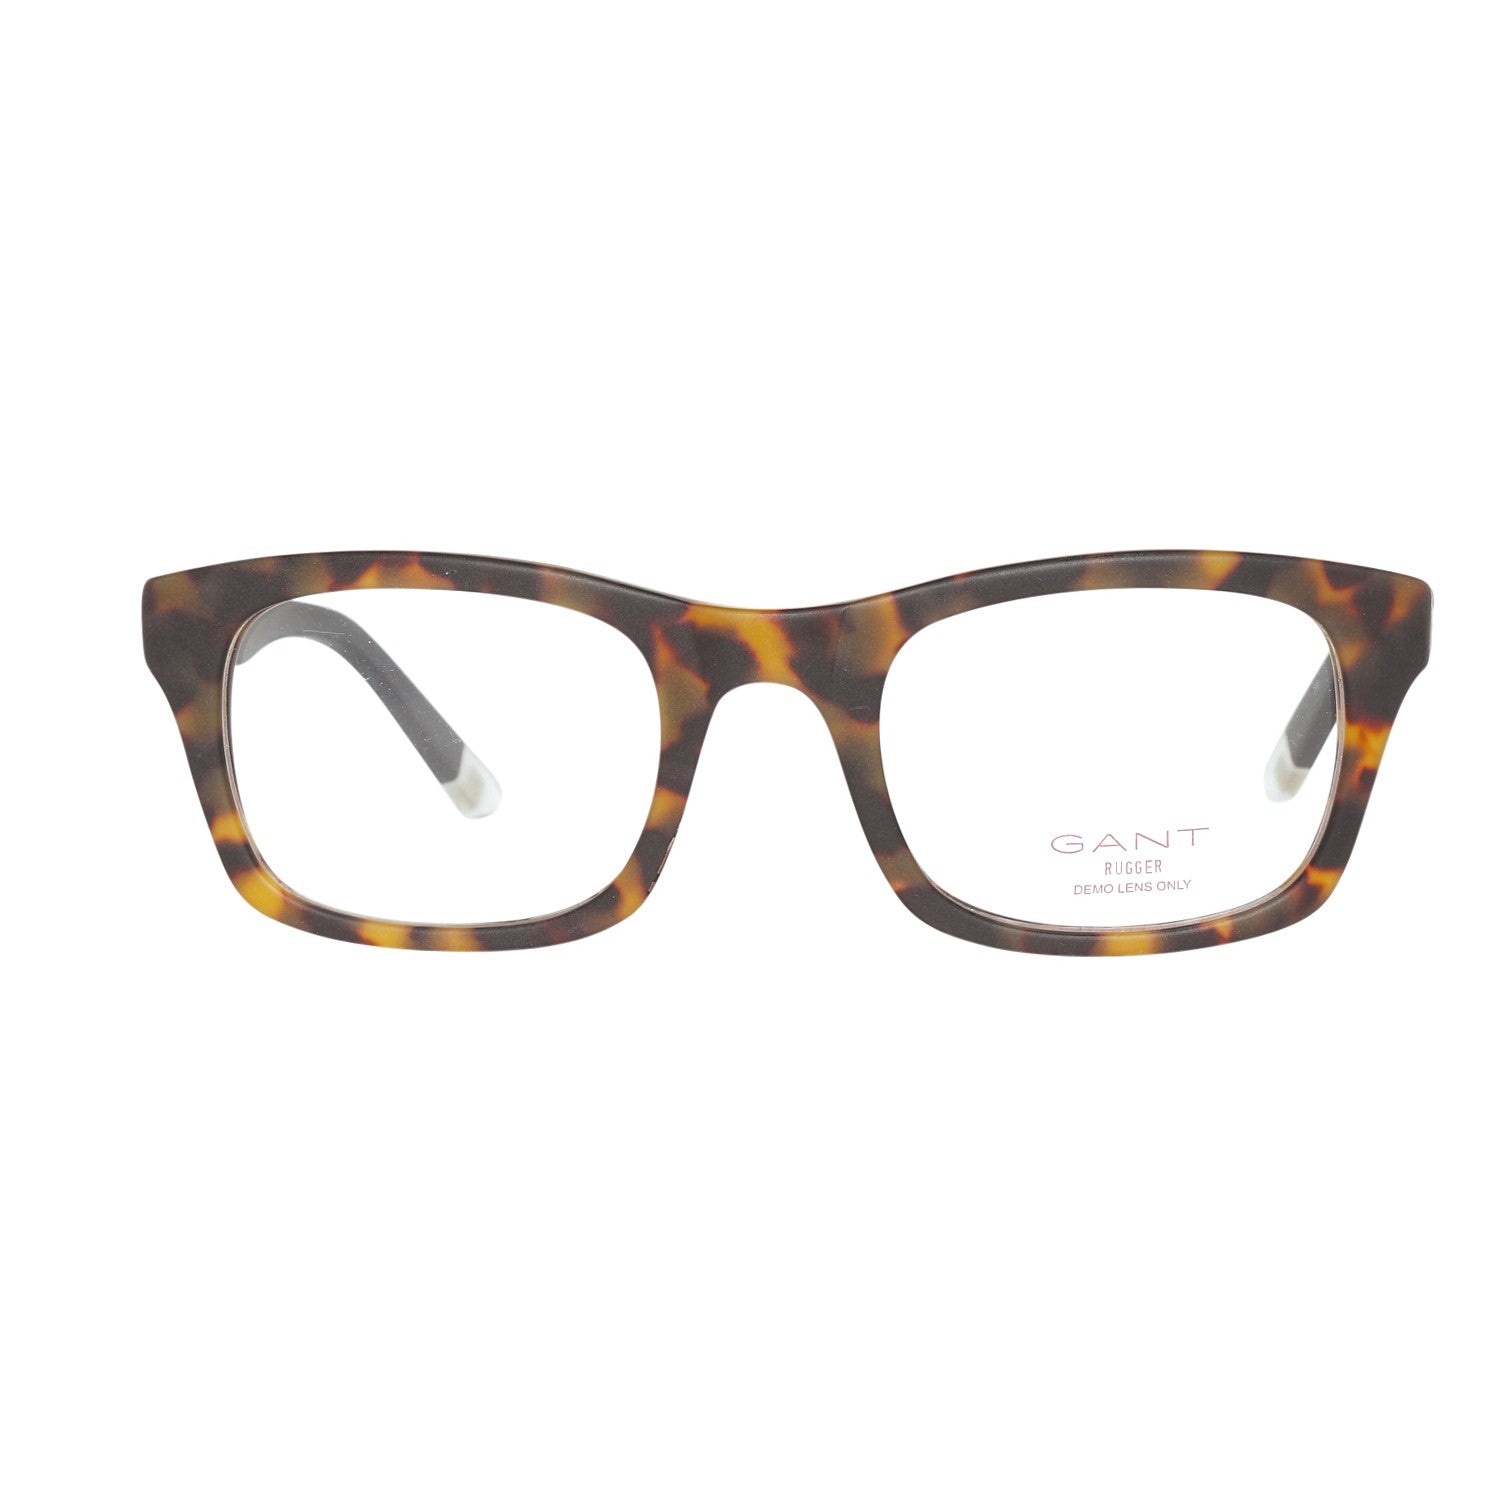 Gant Frames Gant Glasses Frames GRA103 M06 48 | GR 5007 MTOBLK 48 Eyeglasses Eyewear UK USA Australia 